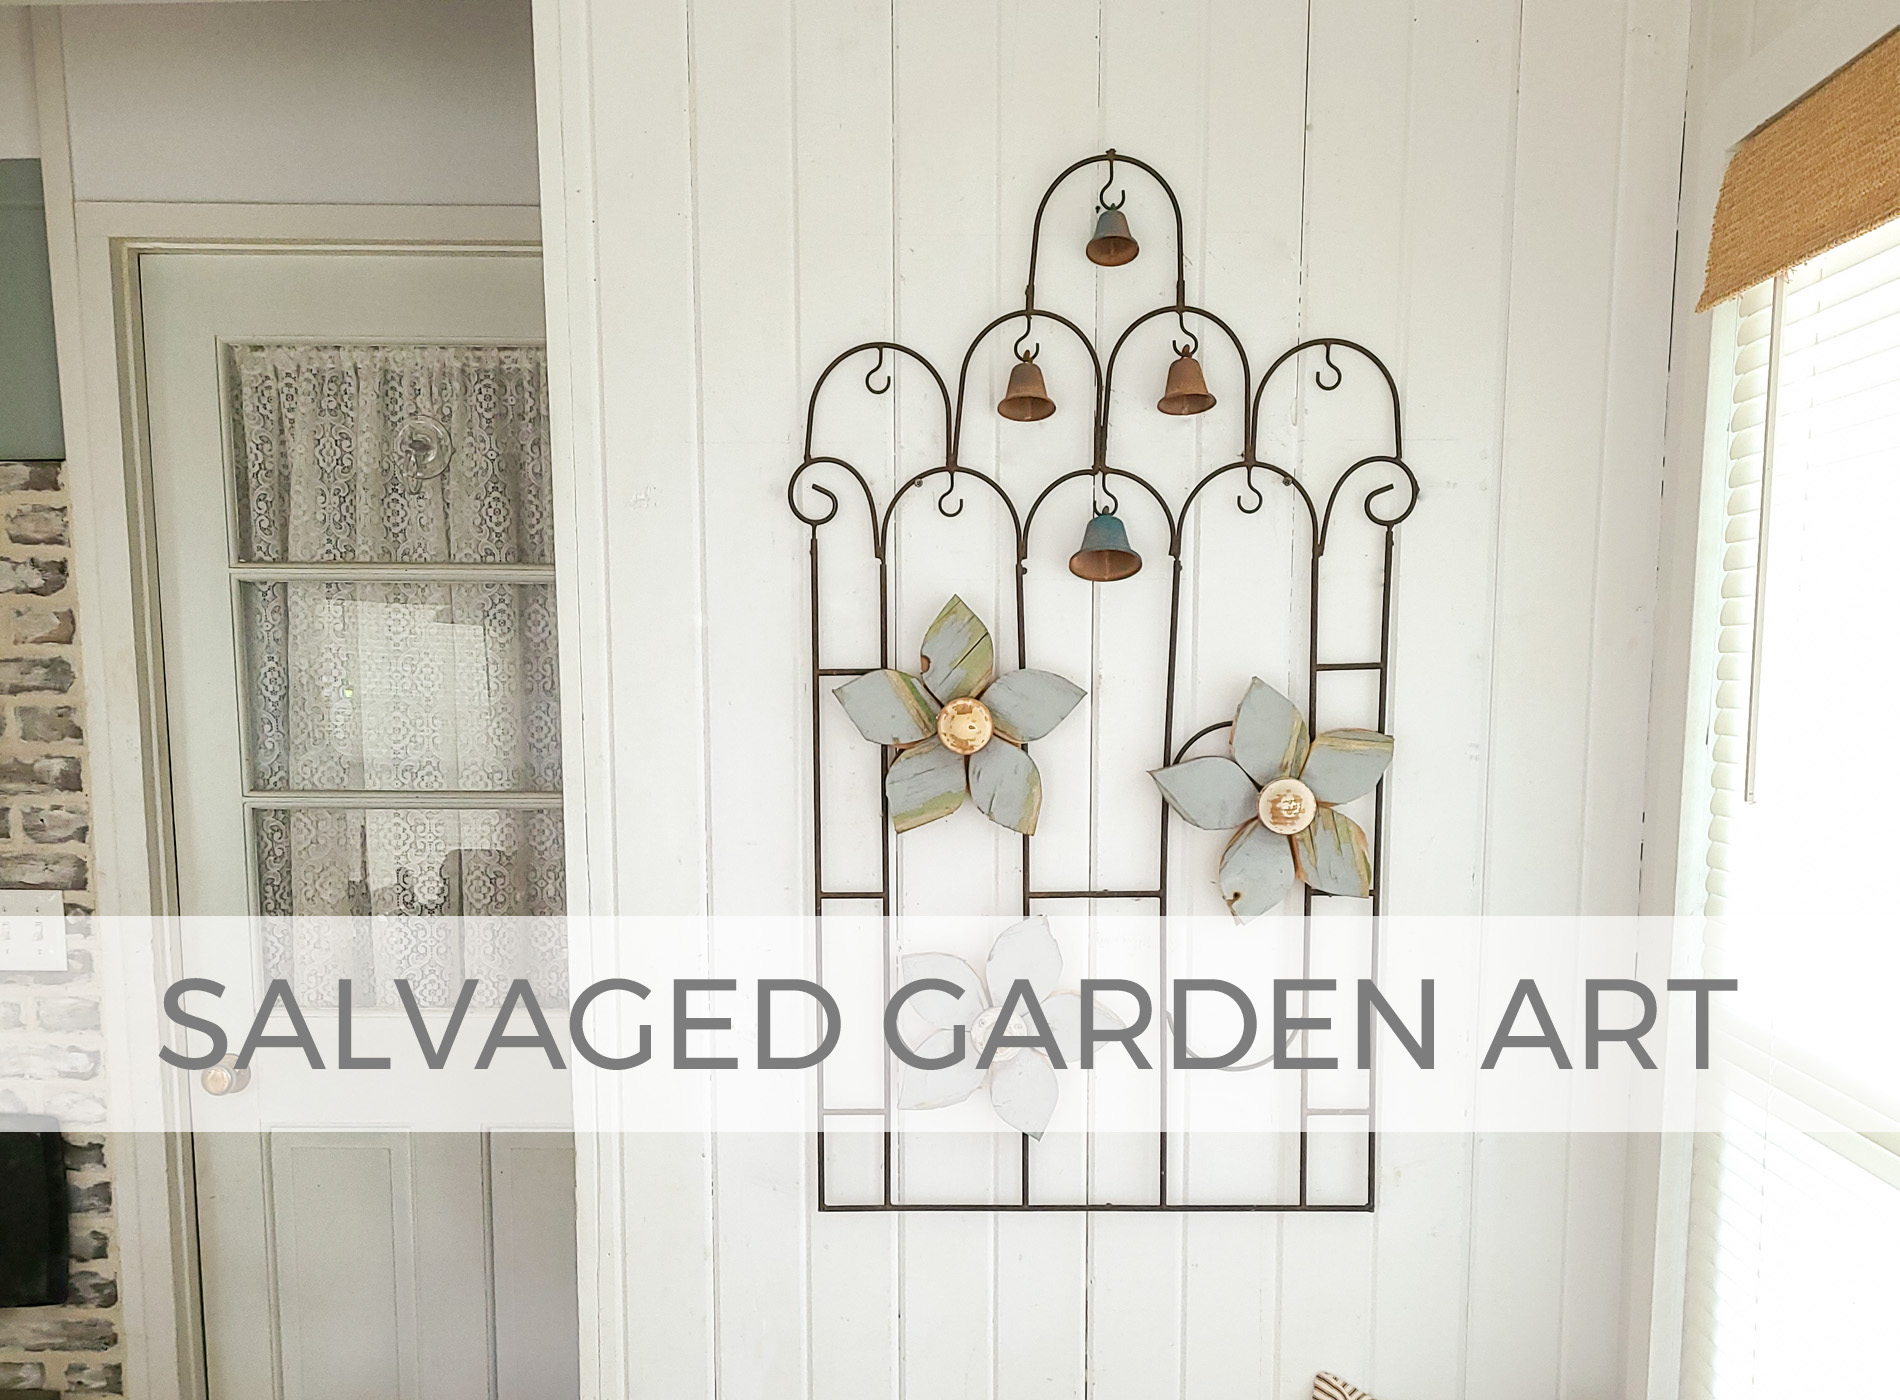 Salvaged Garden Art by Larissa of Prodigal Pieces | prodigalpieces.com #prodigalpieces